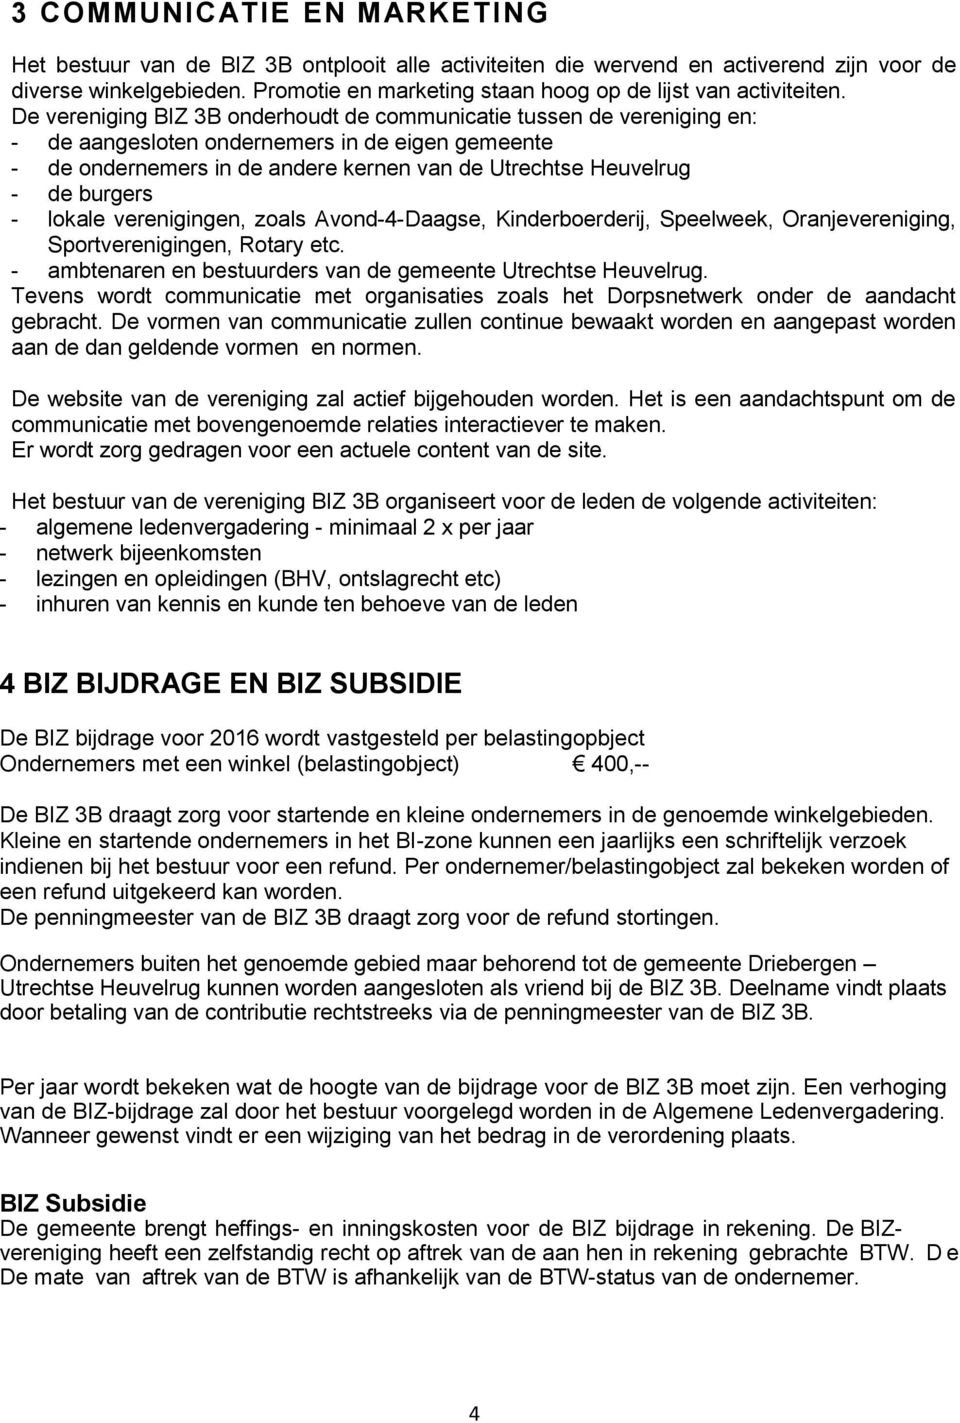 De vereniging BIZ 3B onderhoudt de communicatie tussen de vereniging en: - de aangesloten ondernemers in de eigen gemeente - de ondernemers in de andere kernen van de Utrechtse Heuvelrug - de burgers